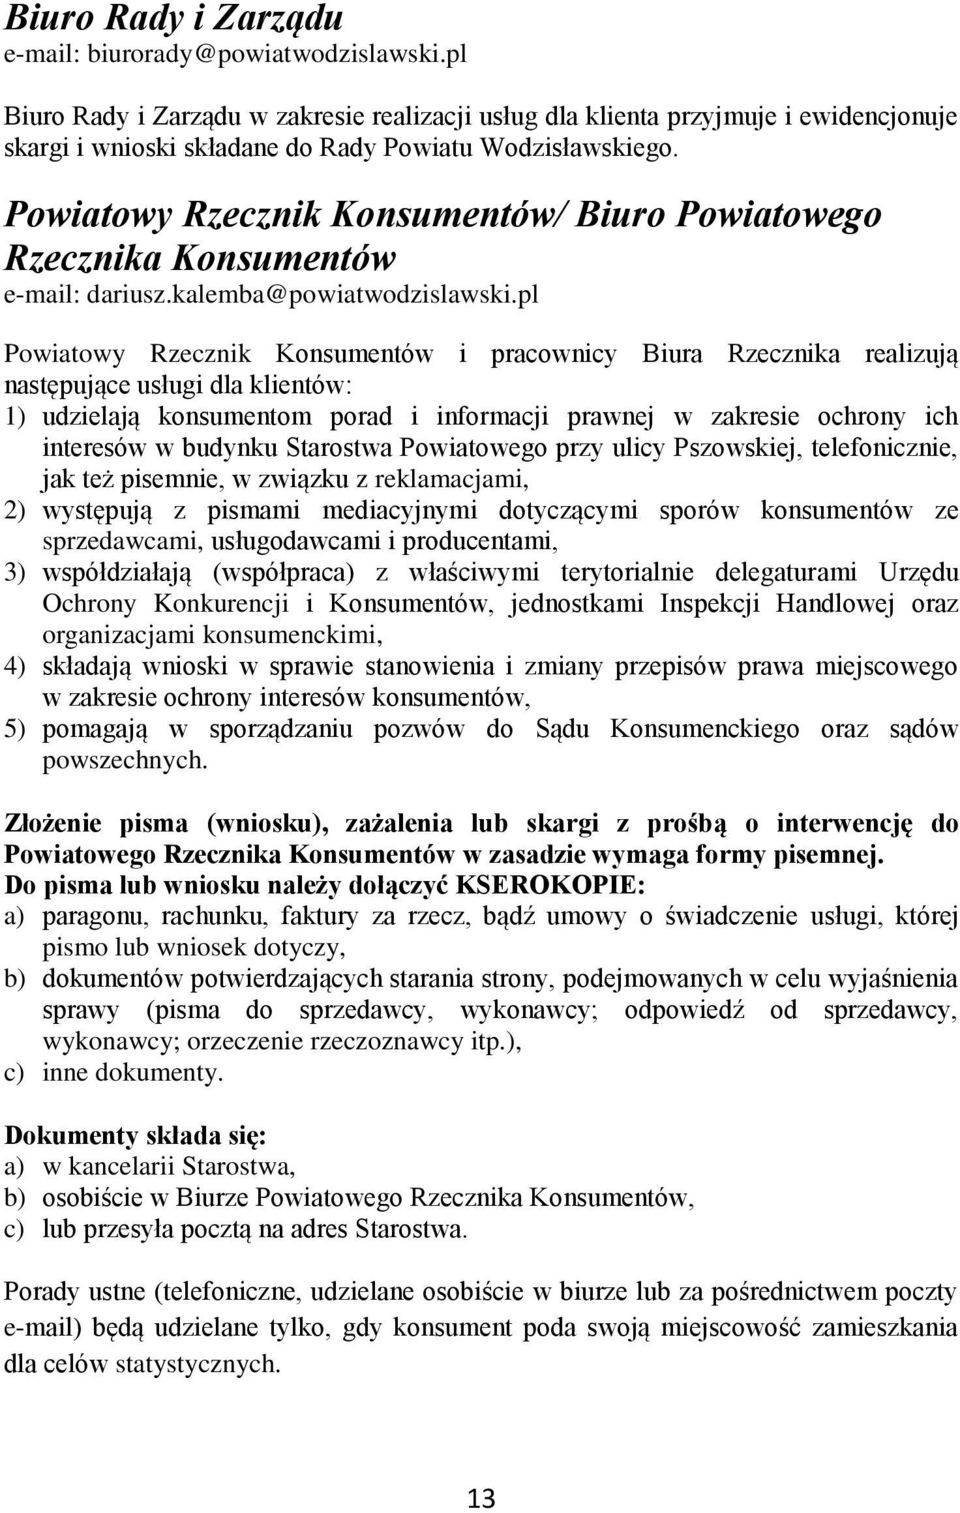 Powiatowy Rzecznik Konsumentów/ Biuro Powiatowego Rzecznika Konsumentów e-mail: dariusz.kalemba@powiatwodzislawski.